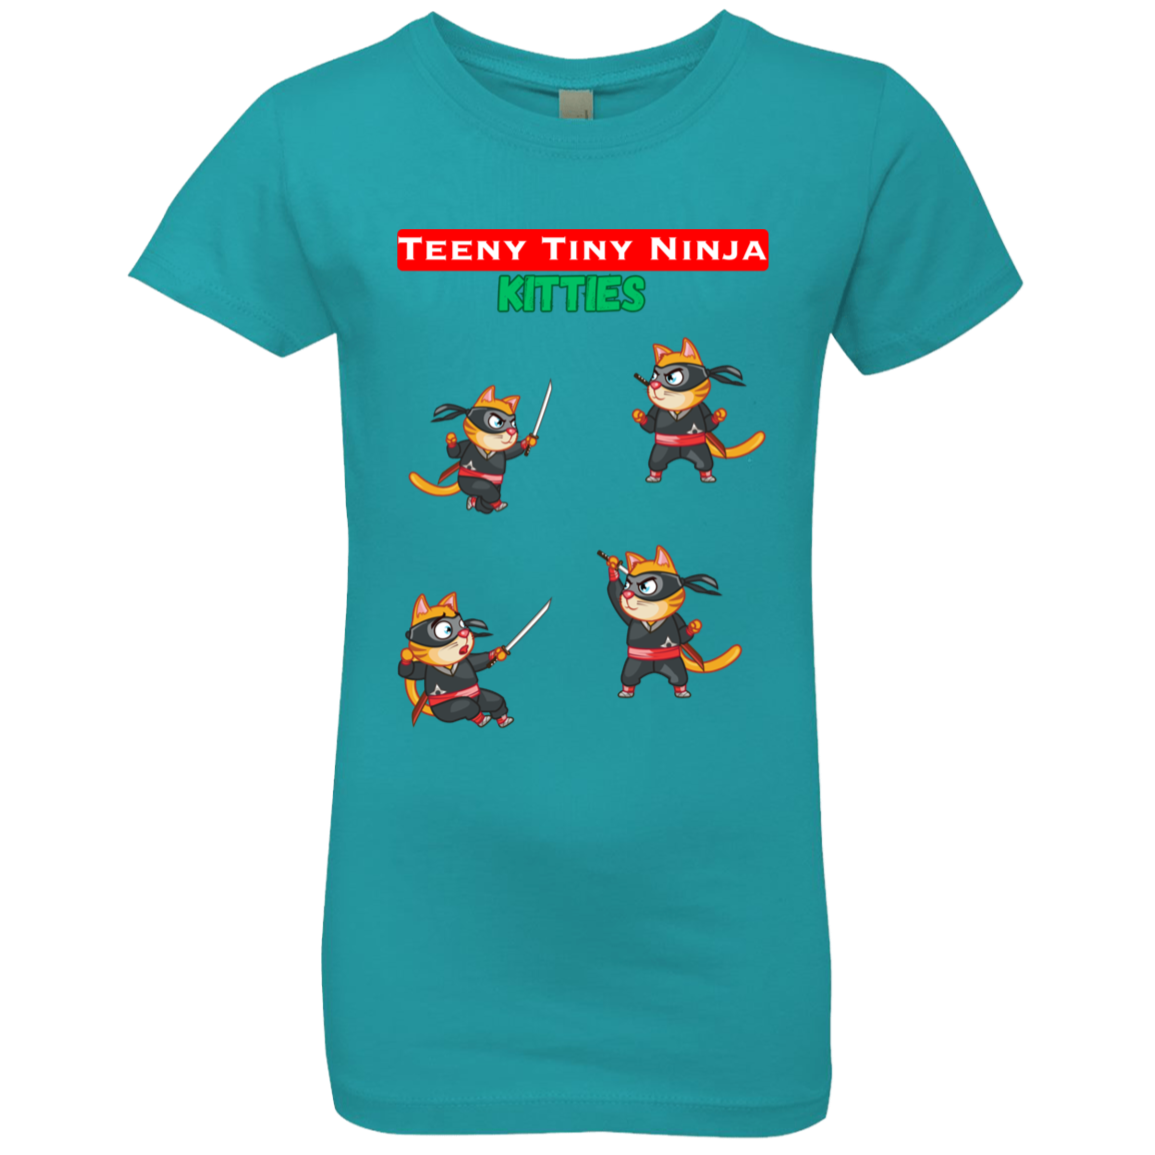 Teeny Tiny Ninja Kitties - Girls', Teen, Youth T-Shirt